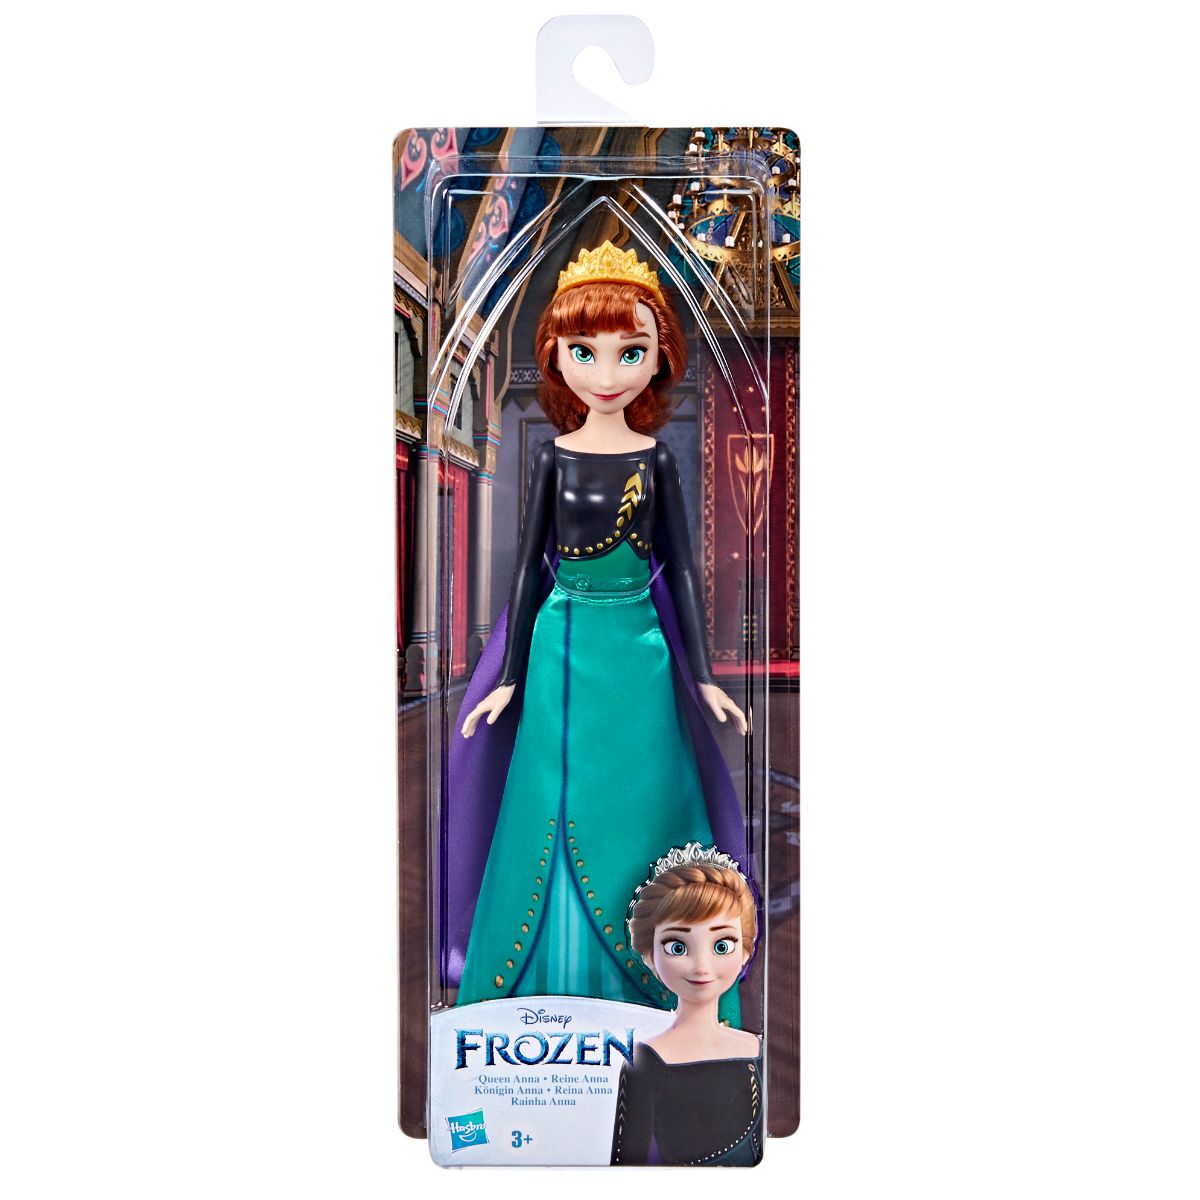 Papusa Frozen 2, Shimmer Queen Anna Anna imagine noua responsabilitatesociala.ro